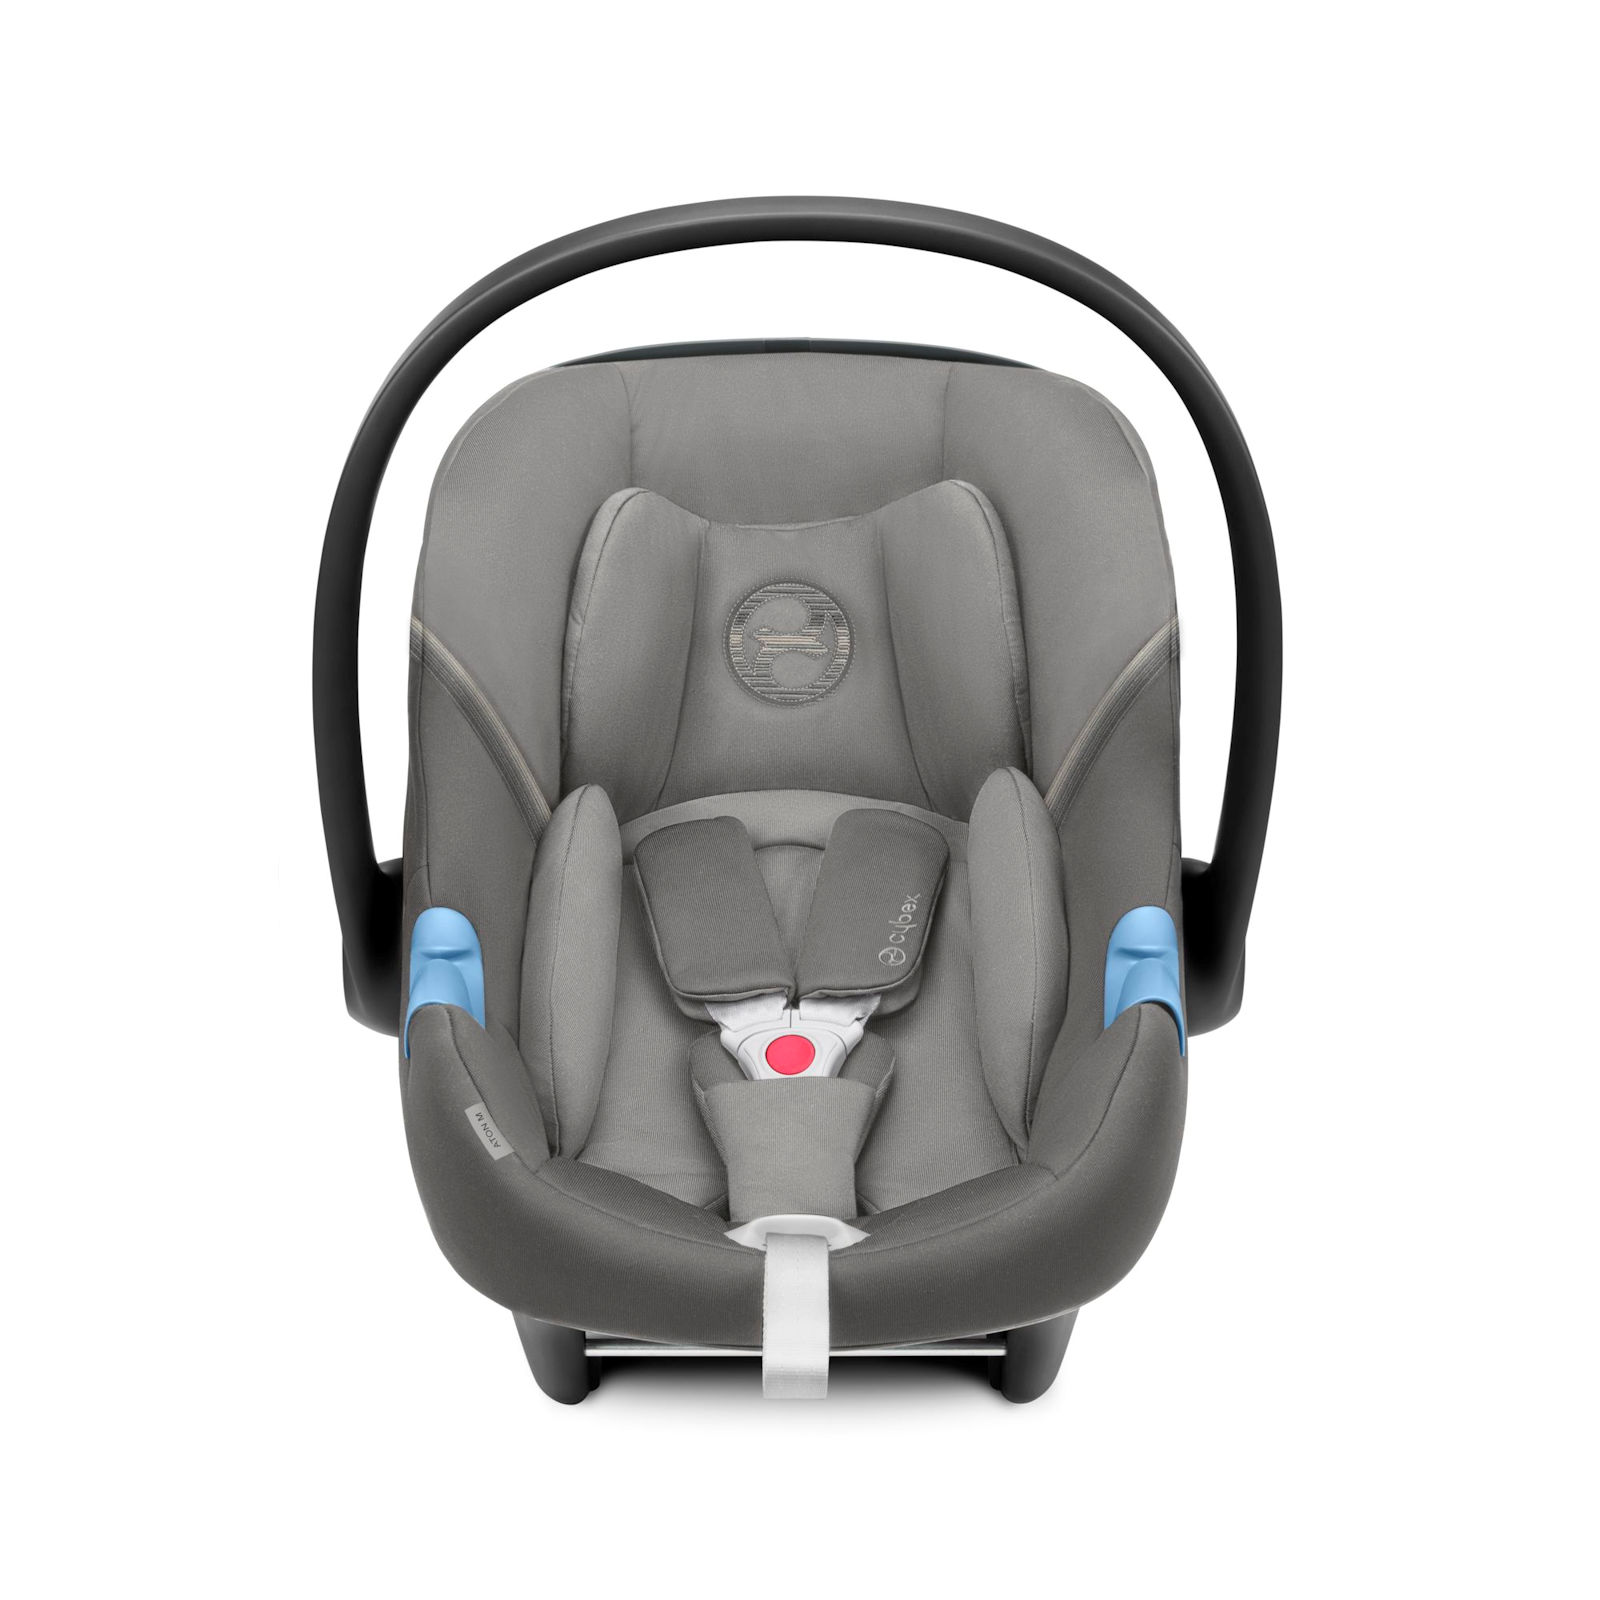 Cybex Aton M i-Size Group 0+ Infant Car Seat - Soho Grey